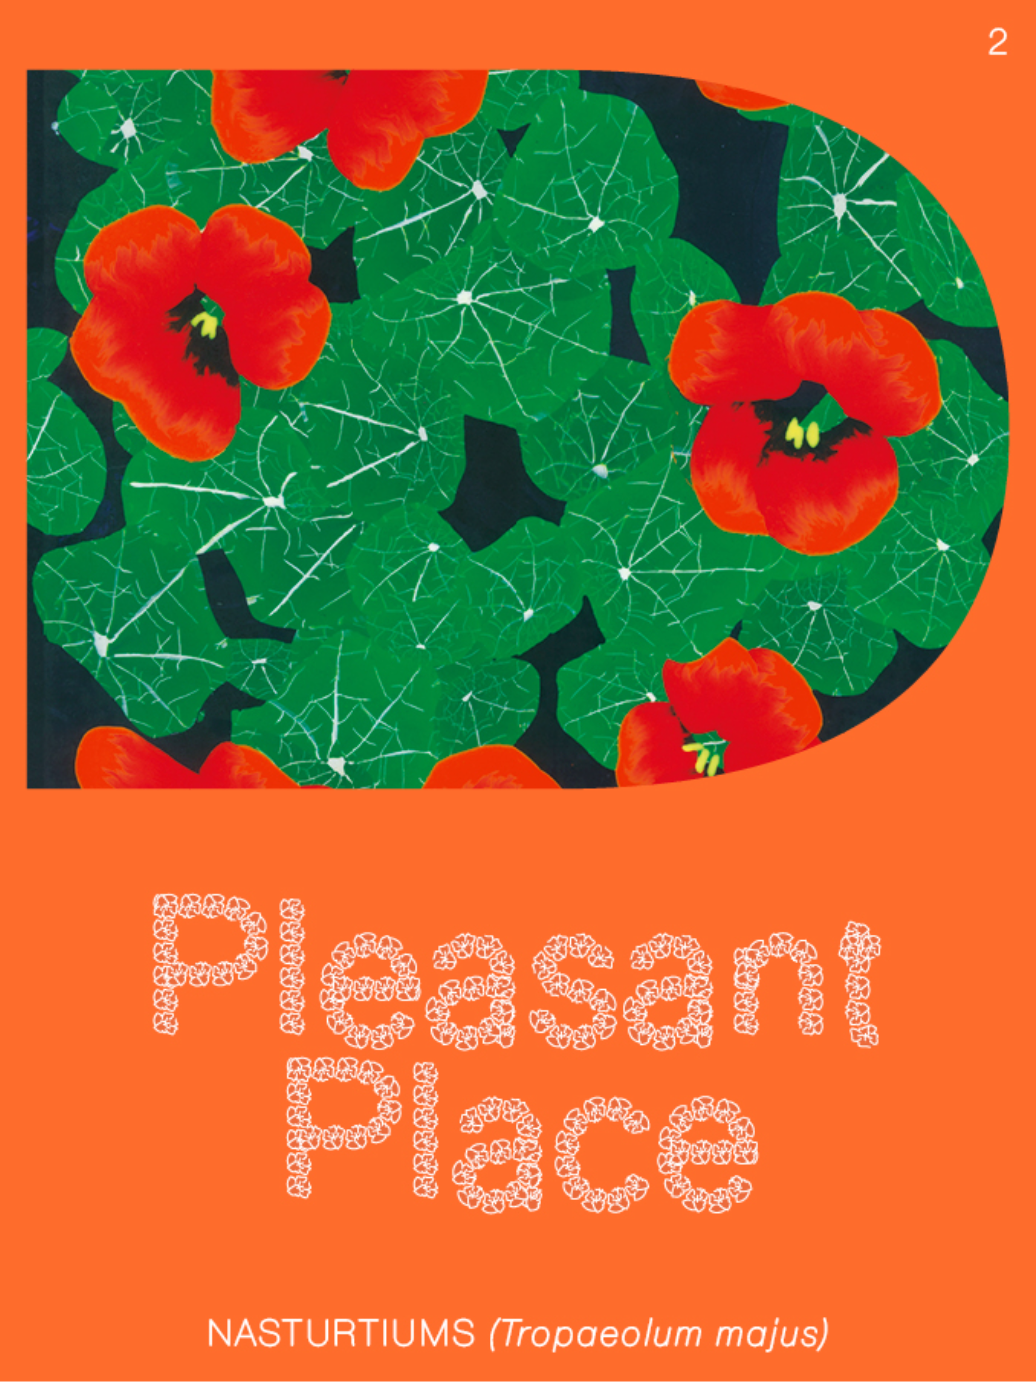 Pleasant Place #2: Nasturtiums